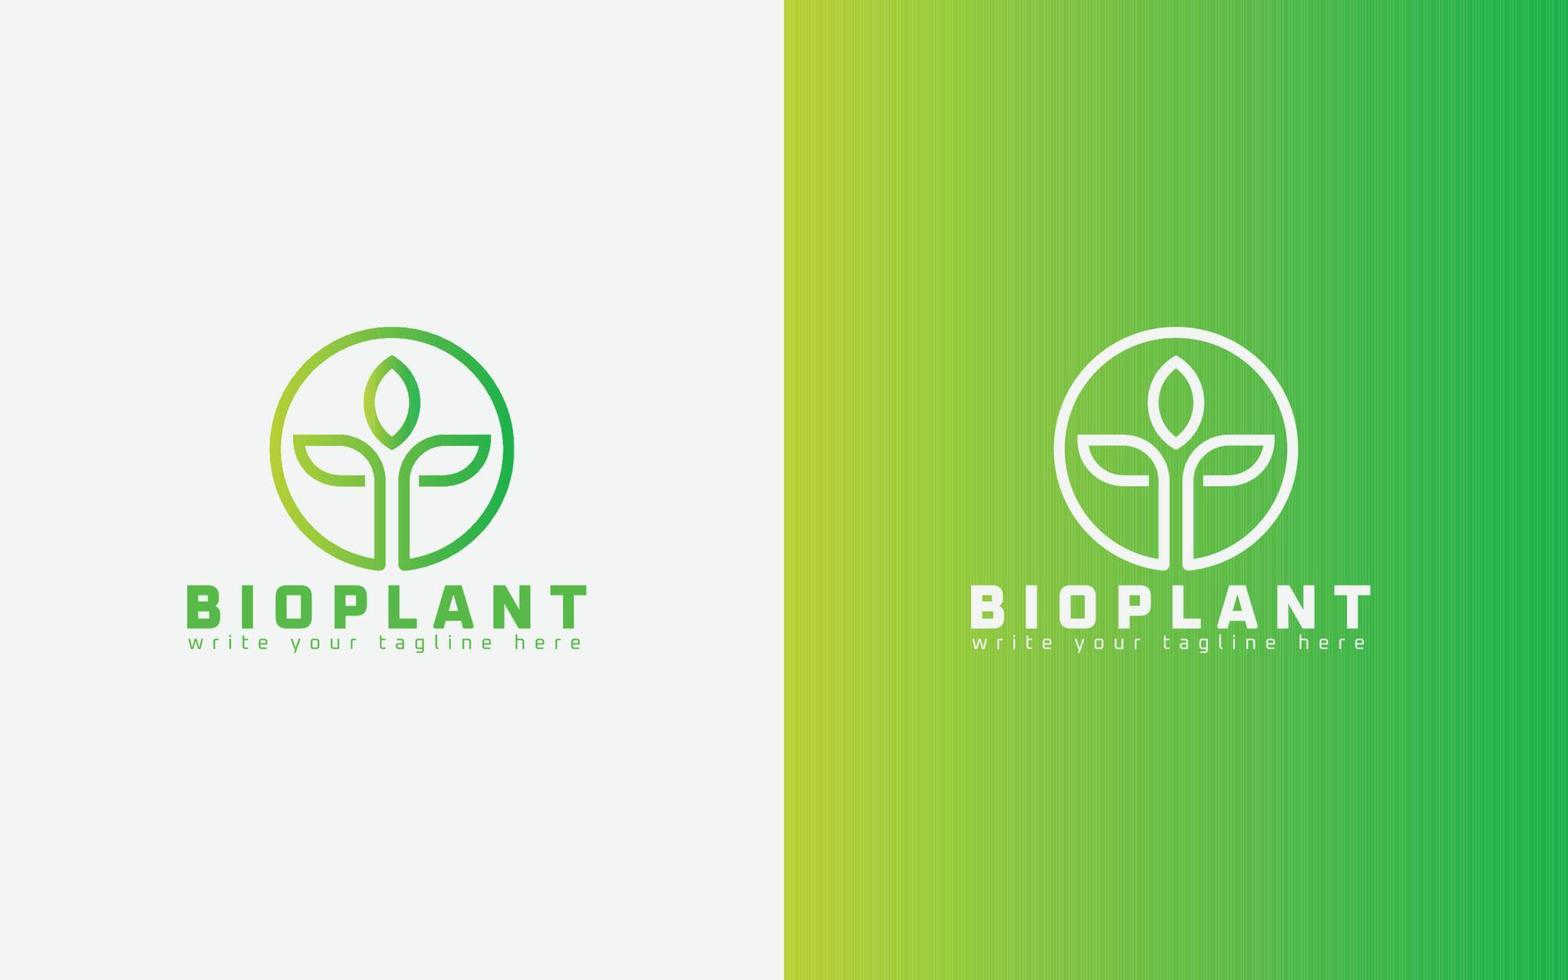 soins bio, biologie, logo écologique et conception vectorielle écologique, logo minimal de plante bio. vecteur